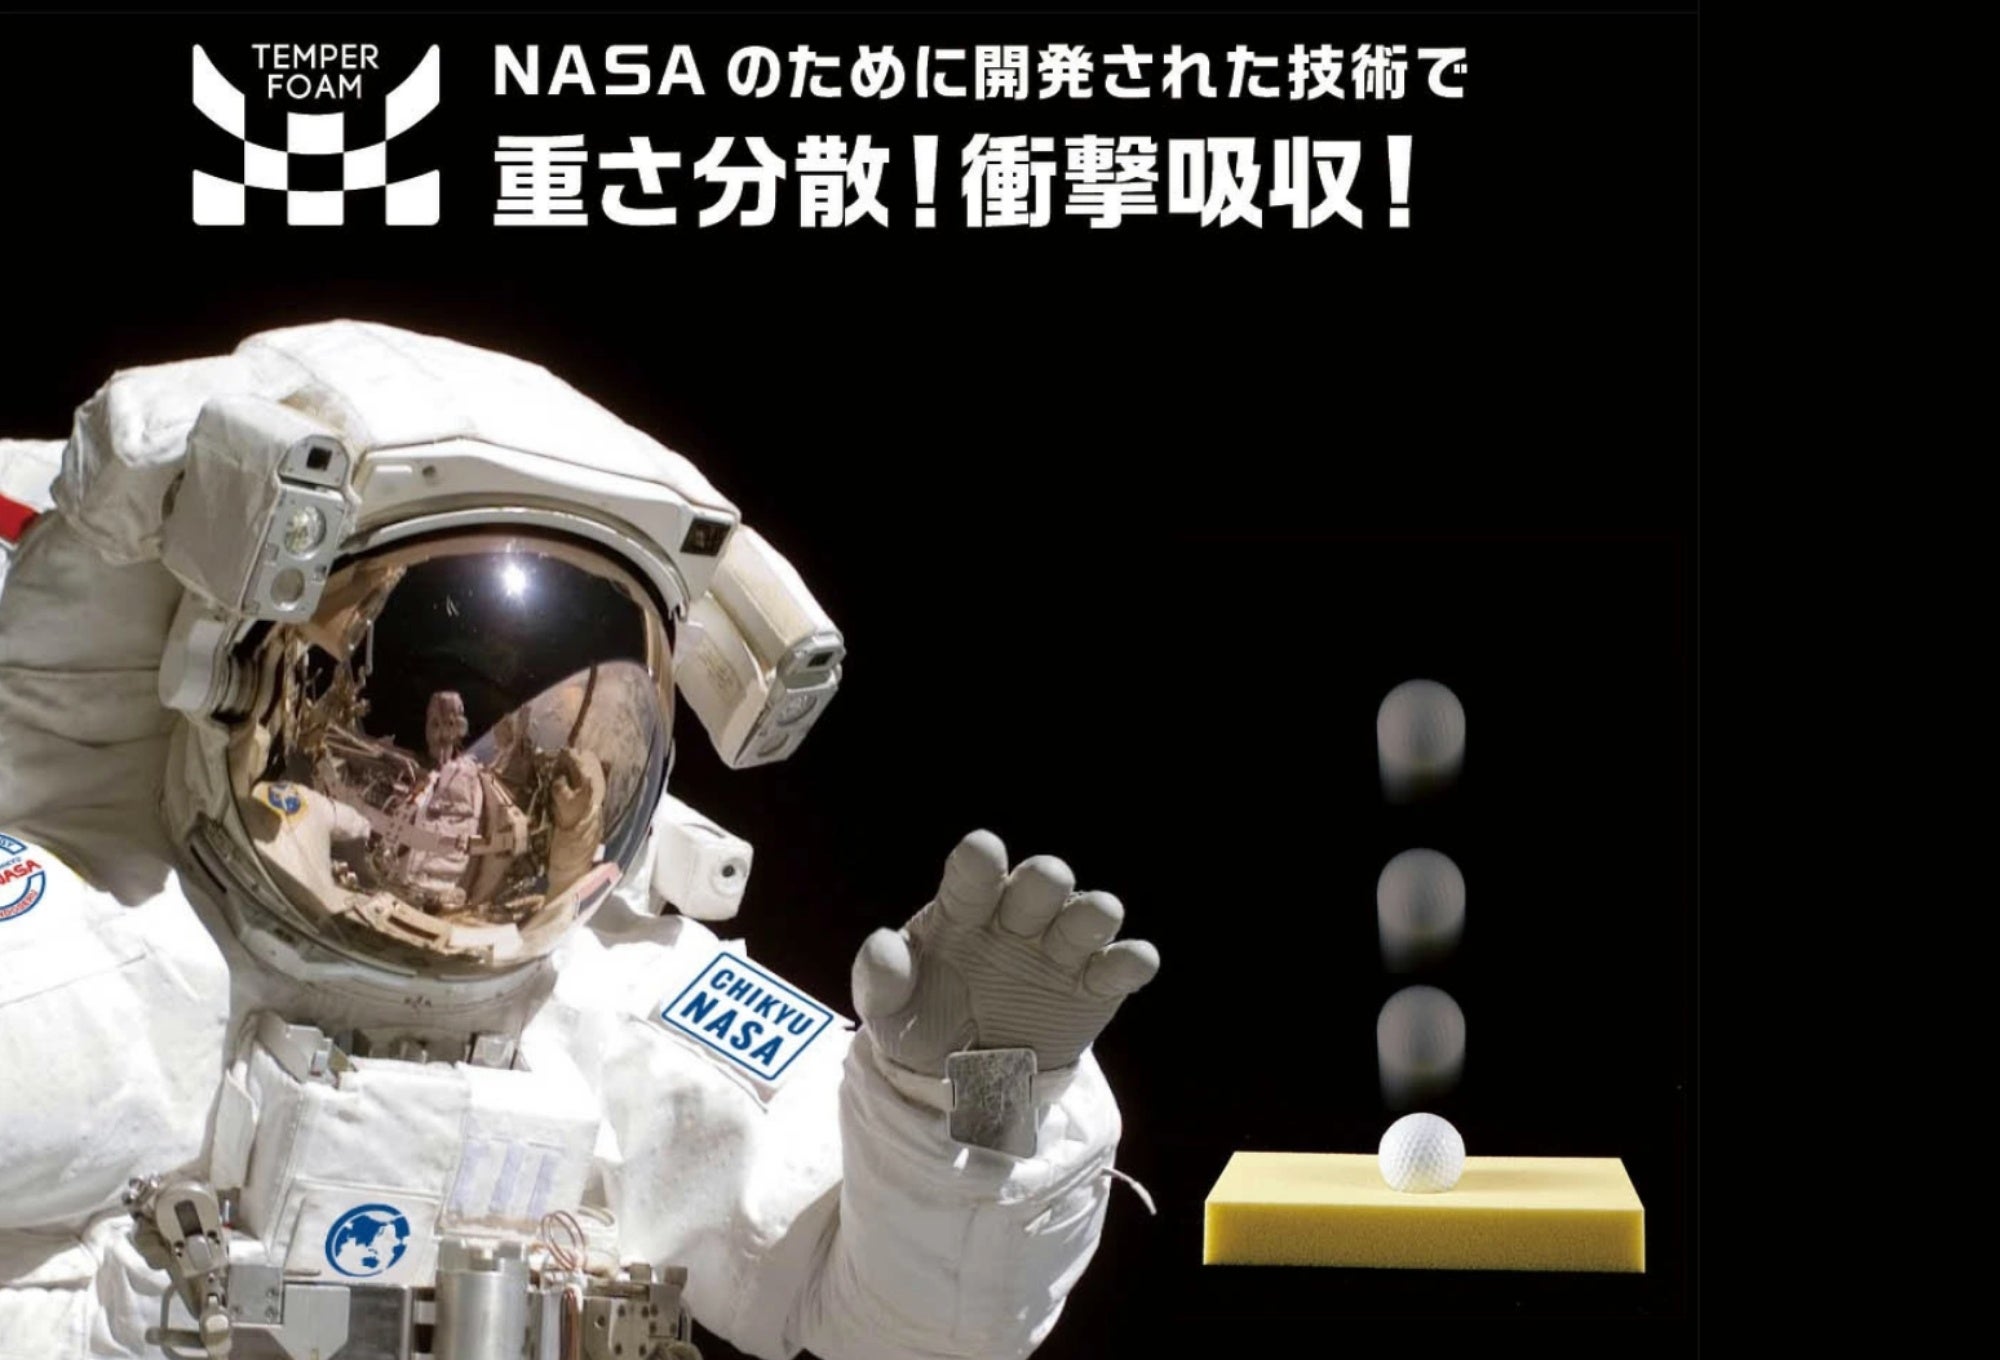 【埼玉】矢尾百貨店にて「地球NASAランドセル® 受注会」を開催いたします。